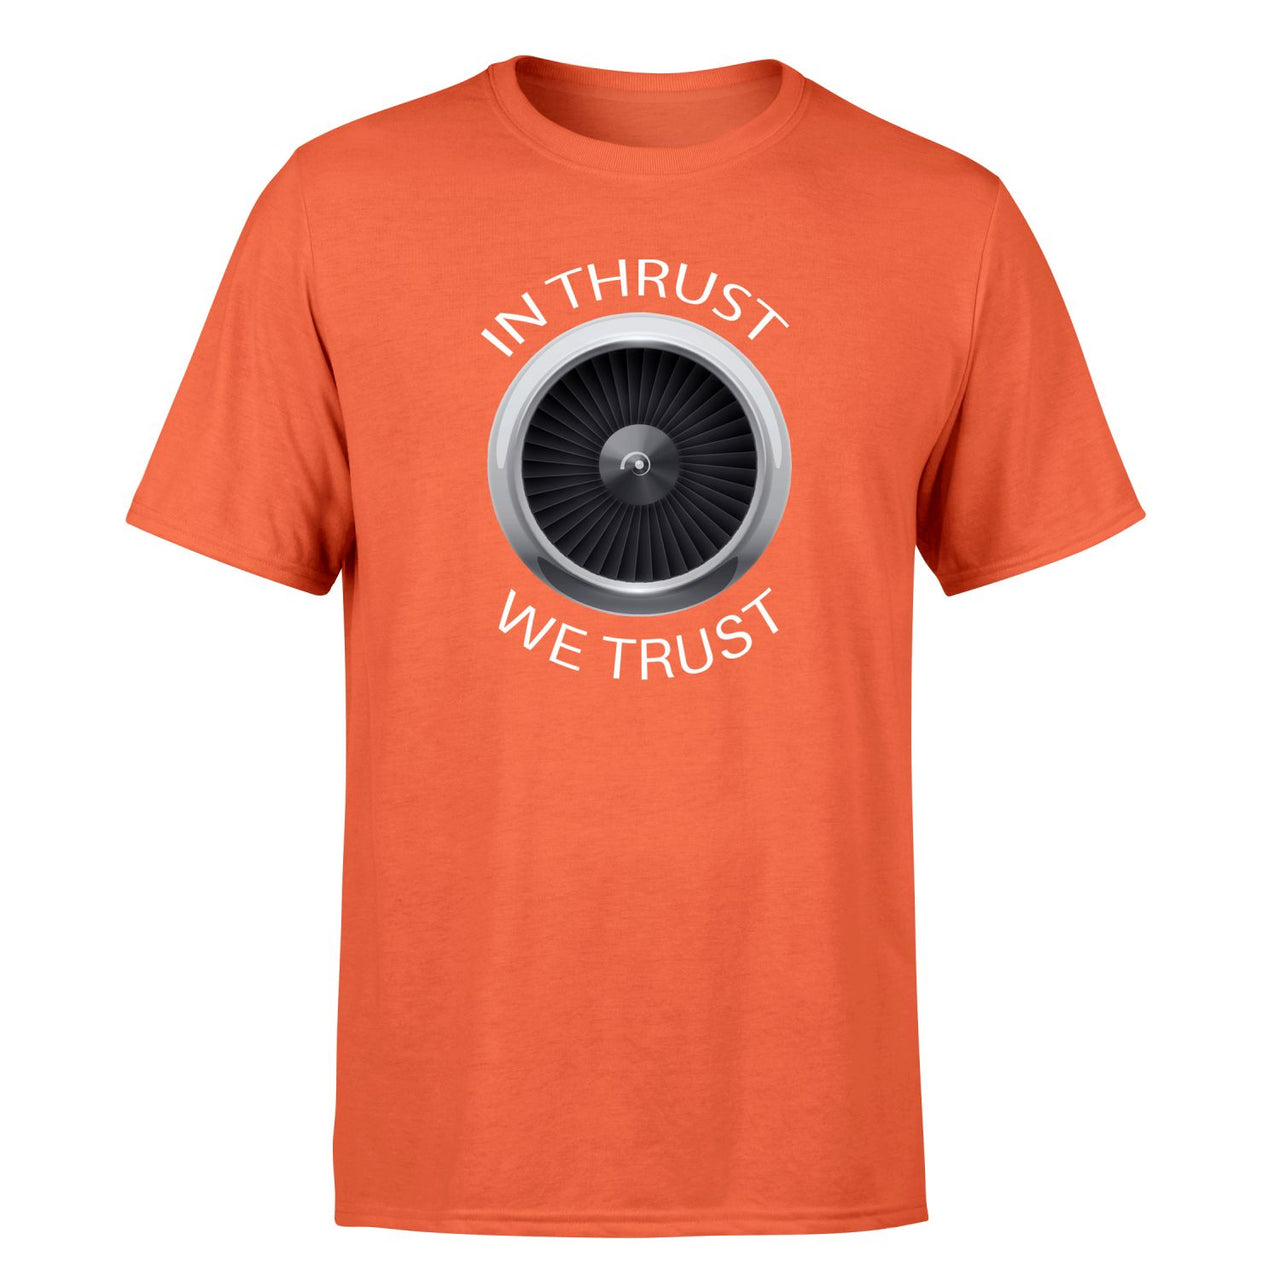 In Thrust We Trust Designed T-Shirts